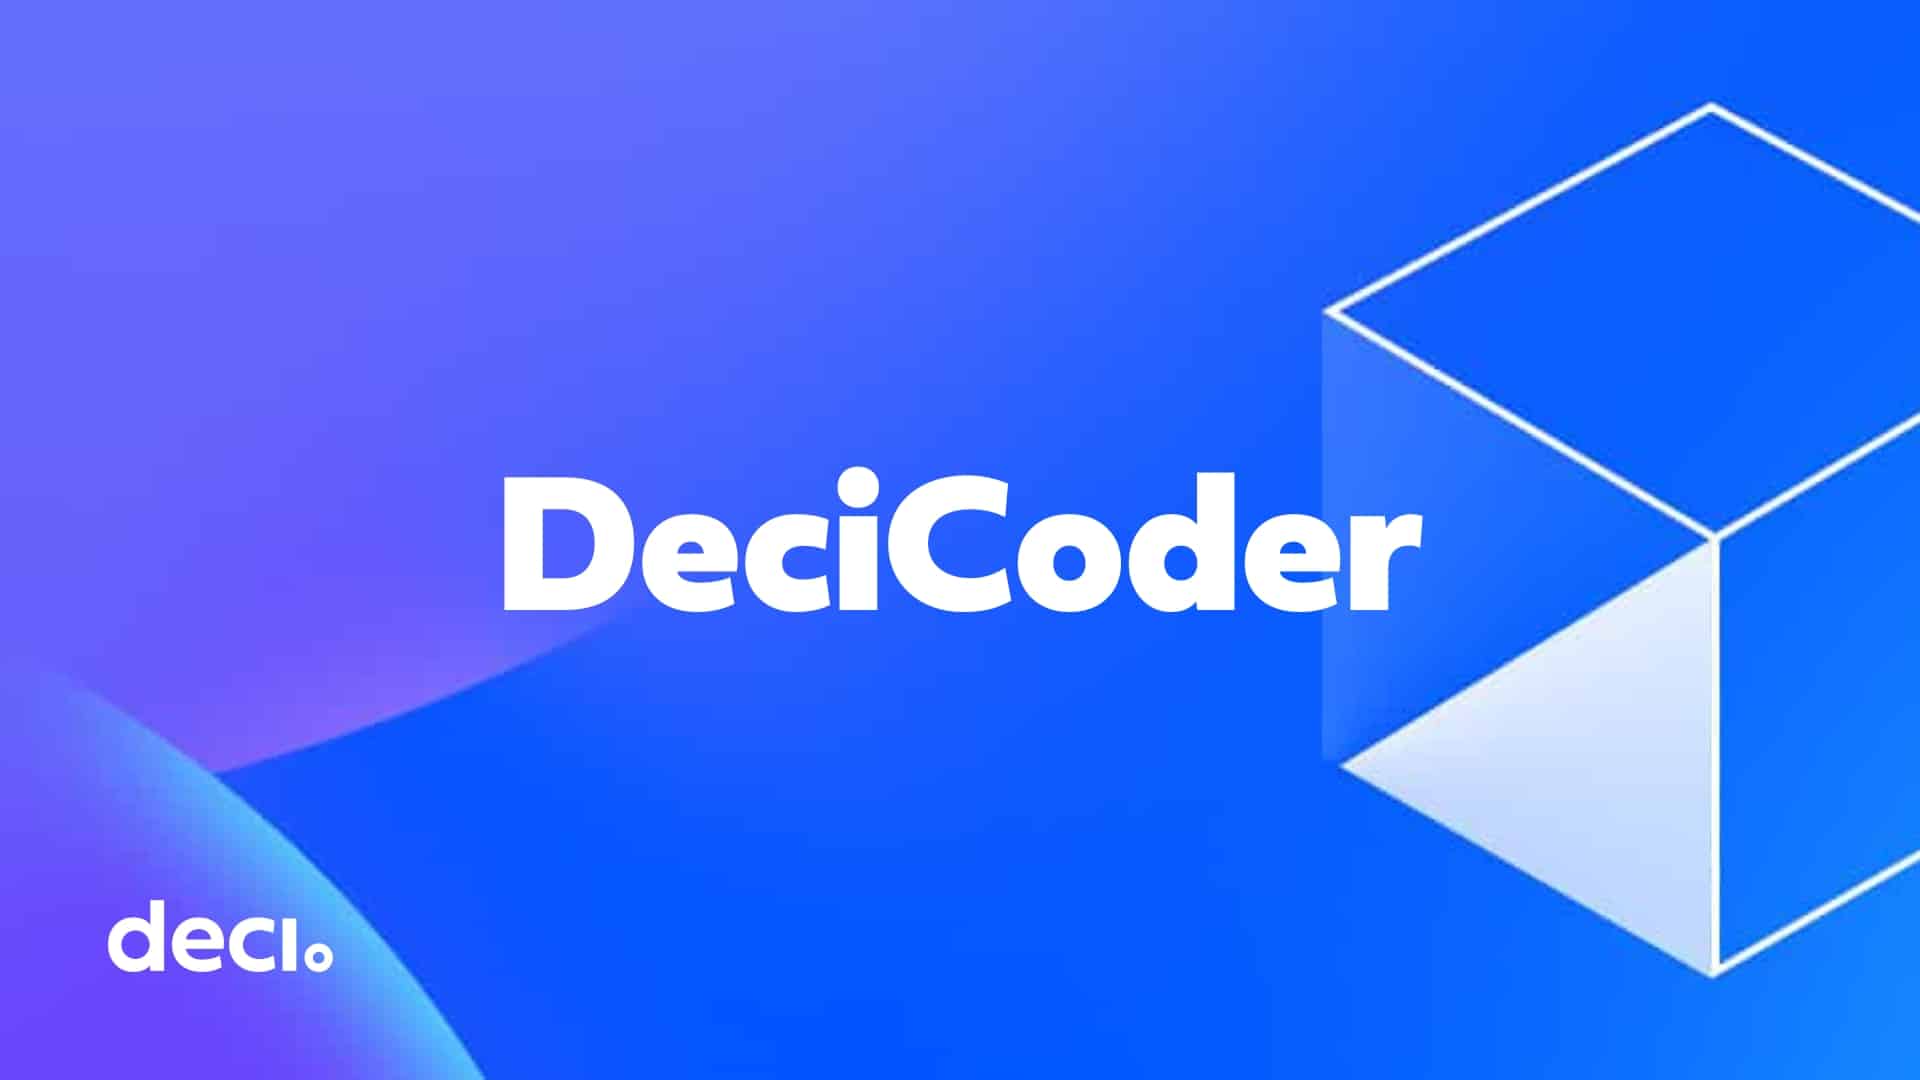 decicoder-launch-pr-featured